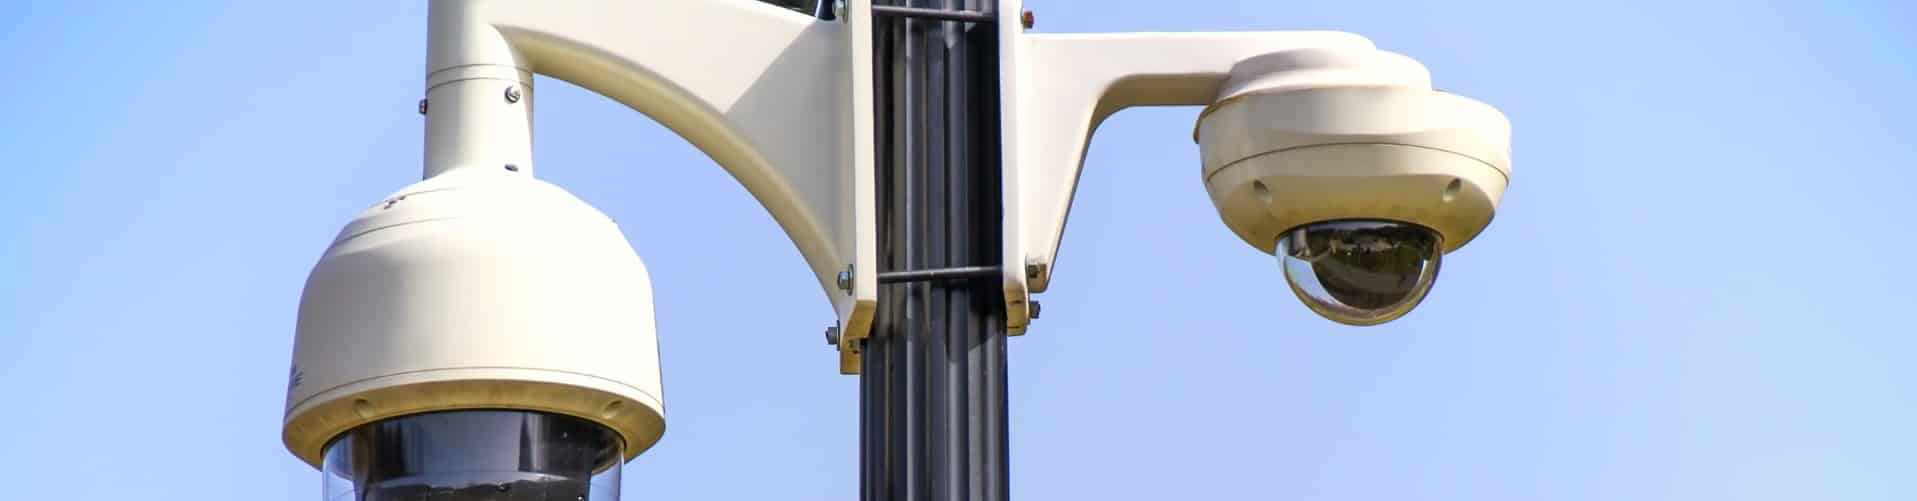 Instalaciones de cámaras de seguridad CCTV e IP